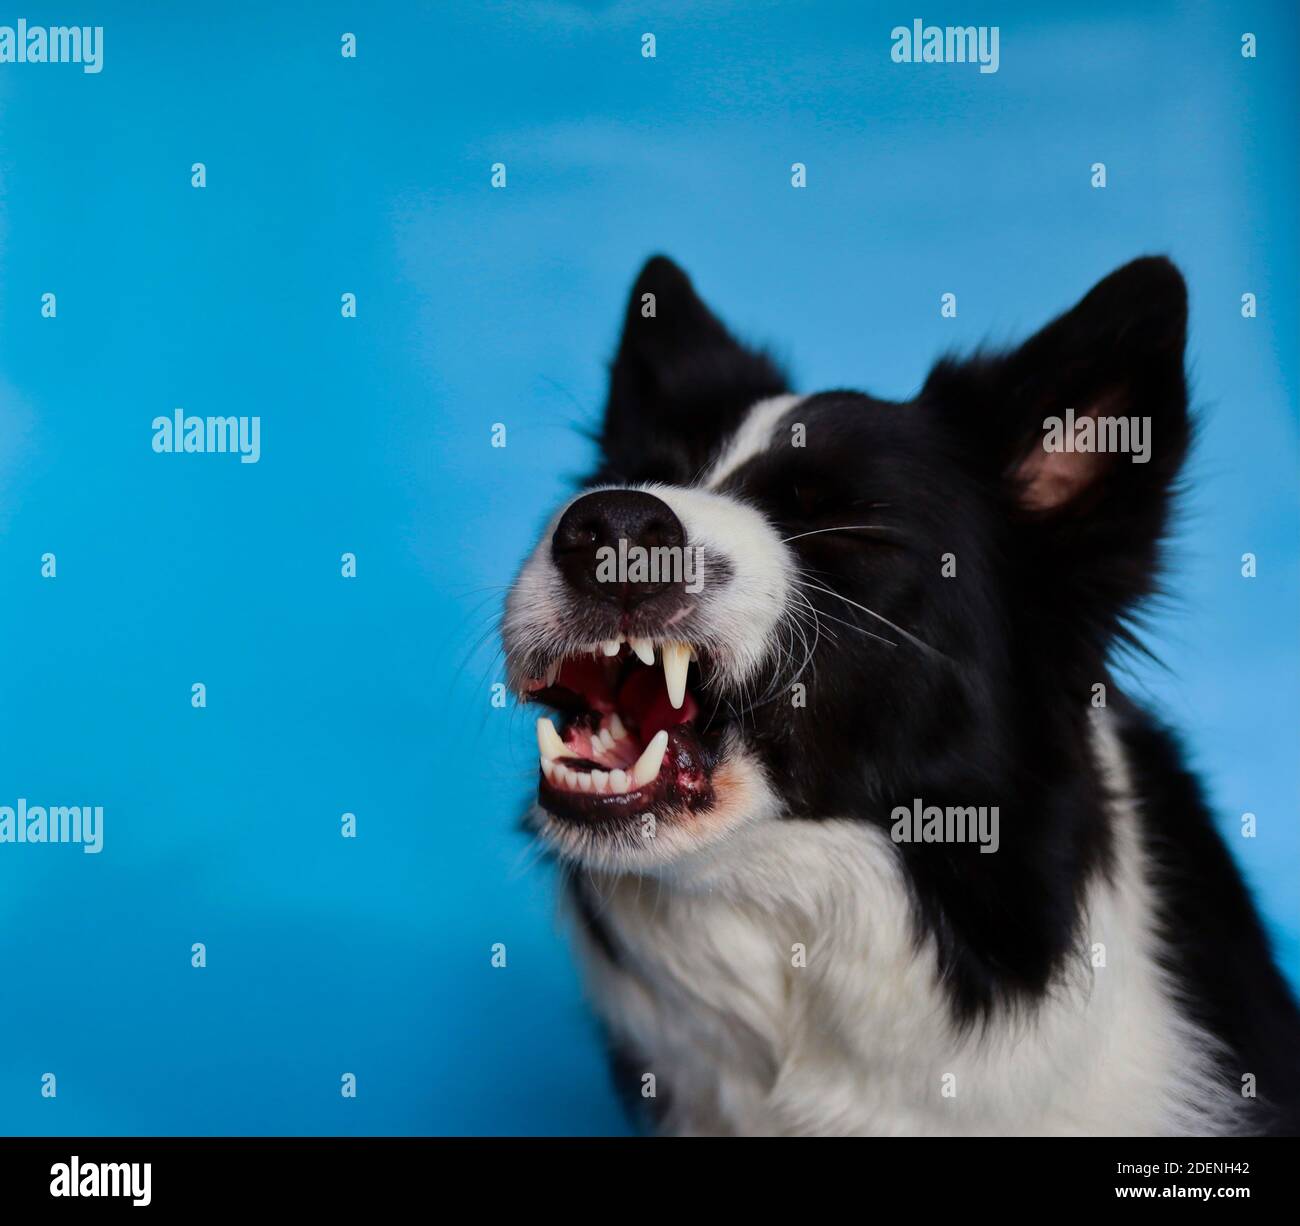 Lustige Border Collie gähnt und zeigt seine Zähne isoliert auf Blau. Nahaufnahme des schwarzen und weißen Hundekopfes. Stockfoto